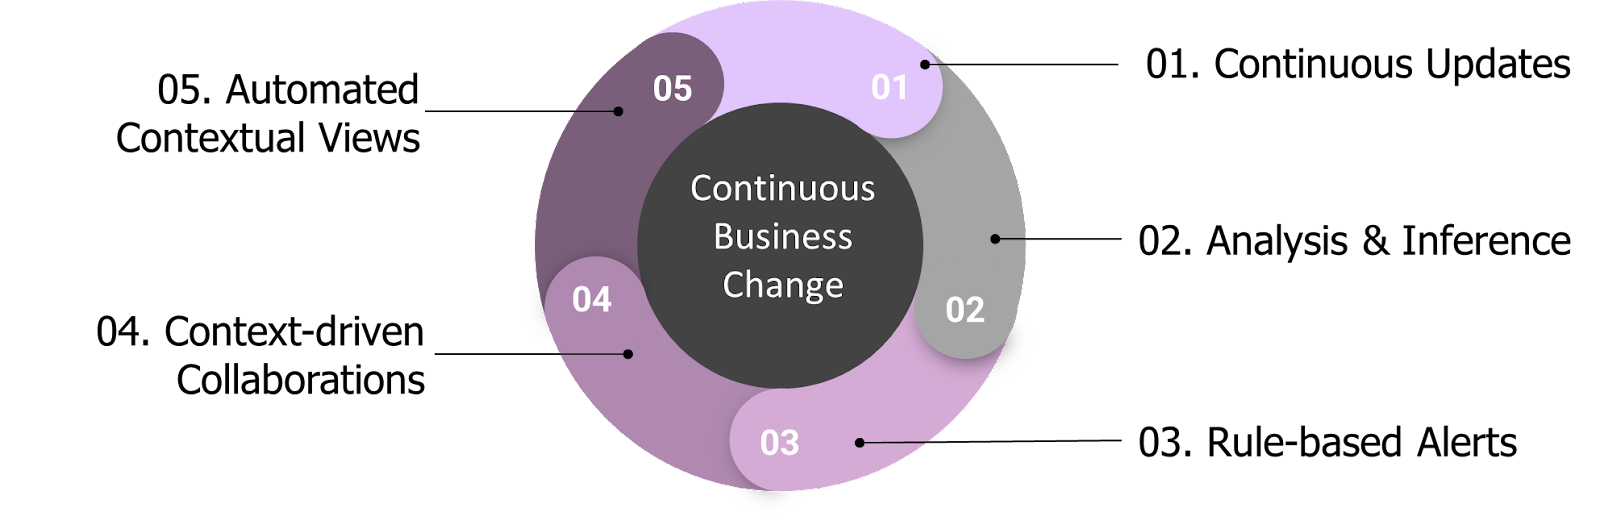 enterprise architecture activities continuous business change